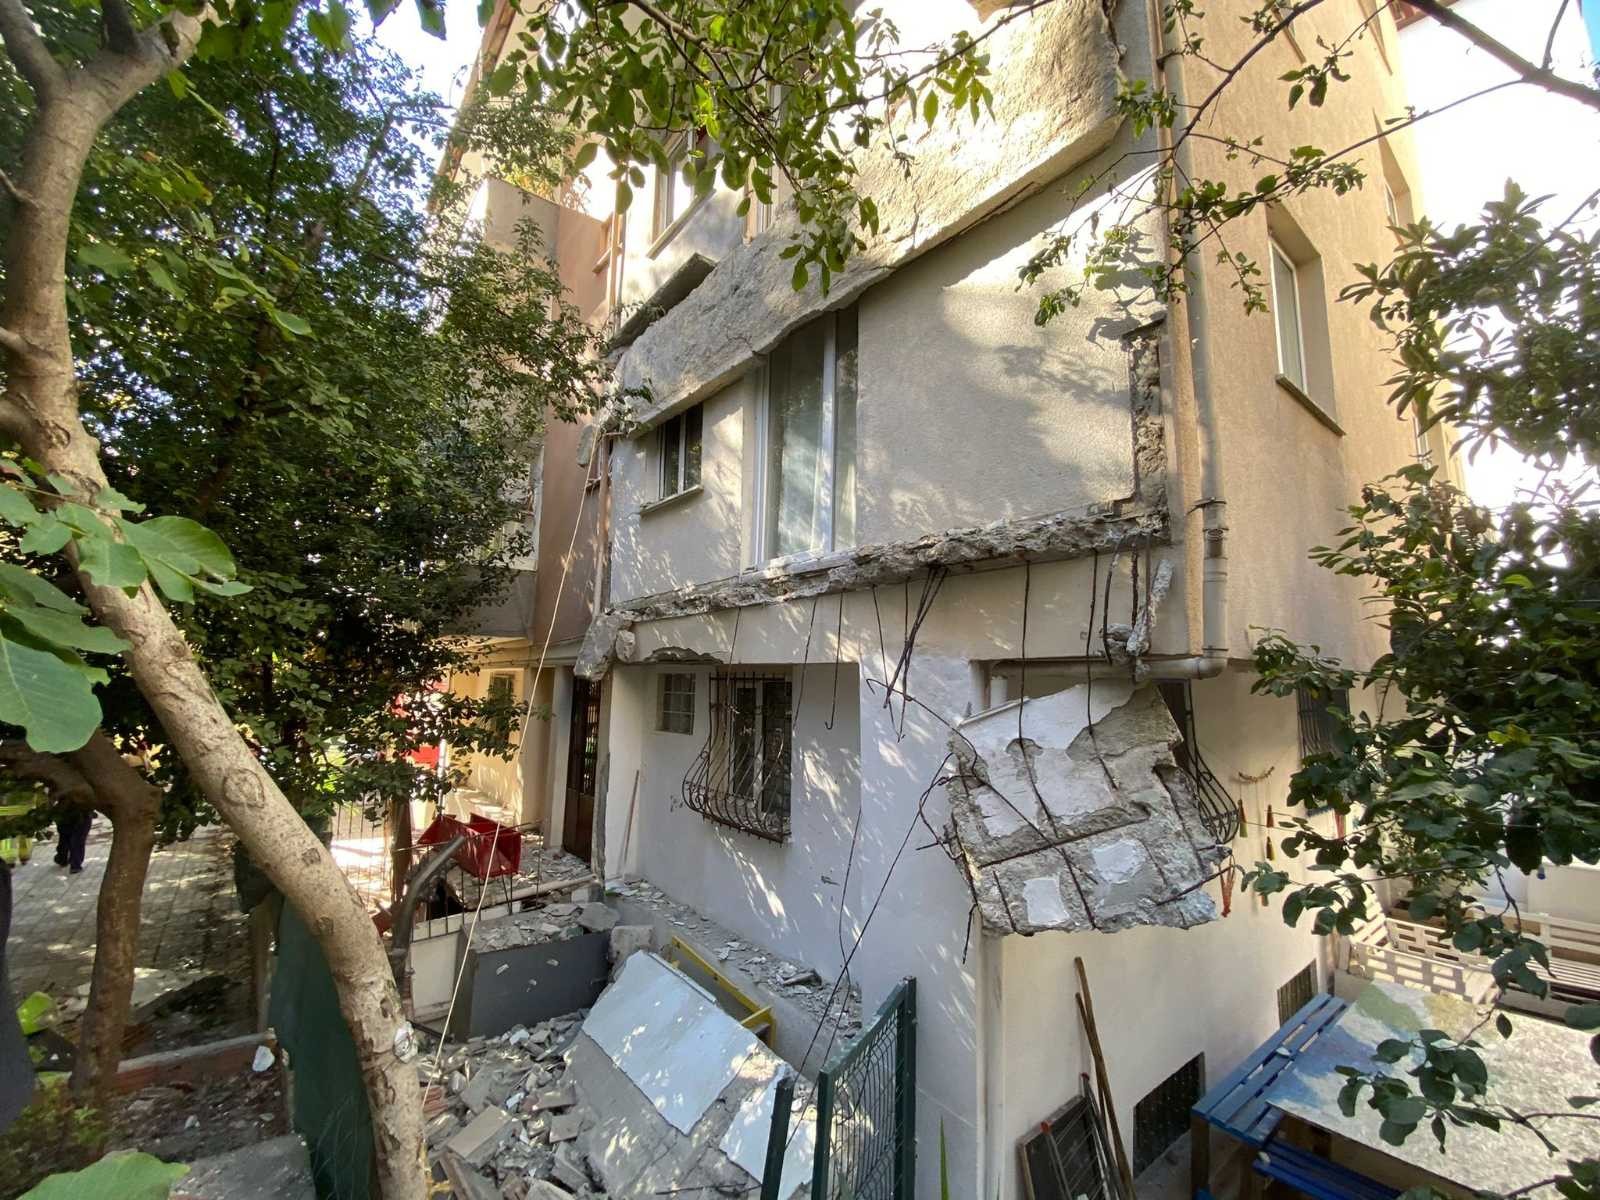 Kadıköy’de 25 yıllık binanın balkonları çöktü, mahalleli sokağa döküldü #istanbul